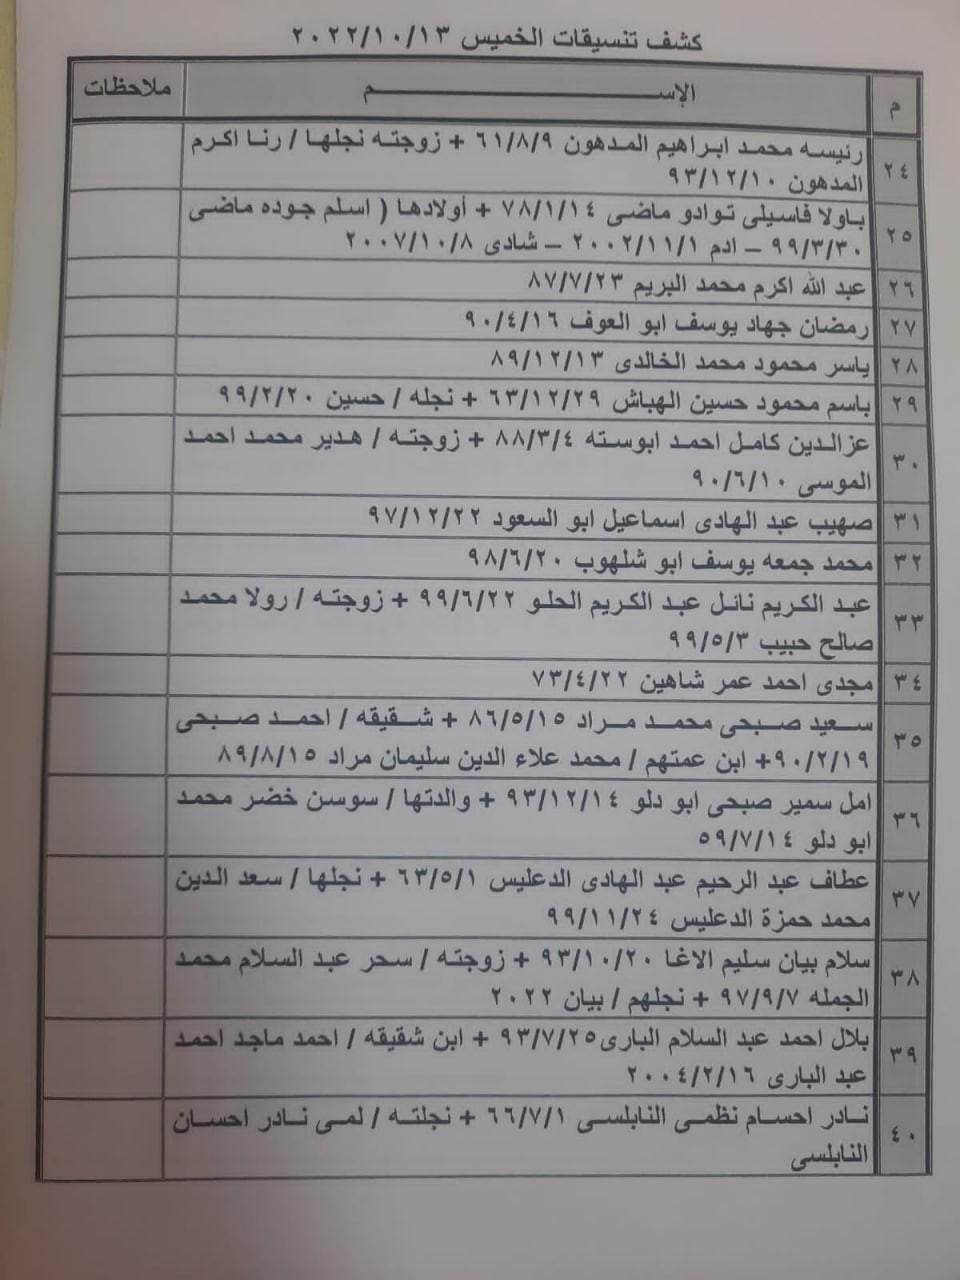 بالأسماء: كشف "تنسيقات مصرية" للسفر عبر معبر رفح الخميس 13 أكتوبر 2022